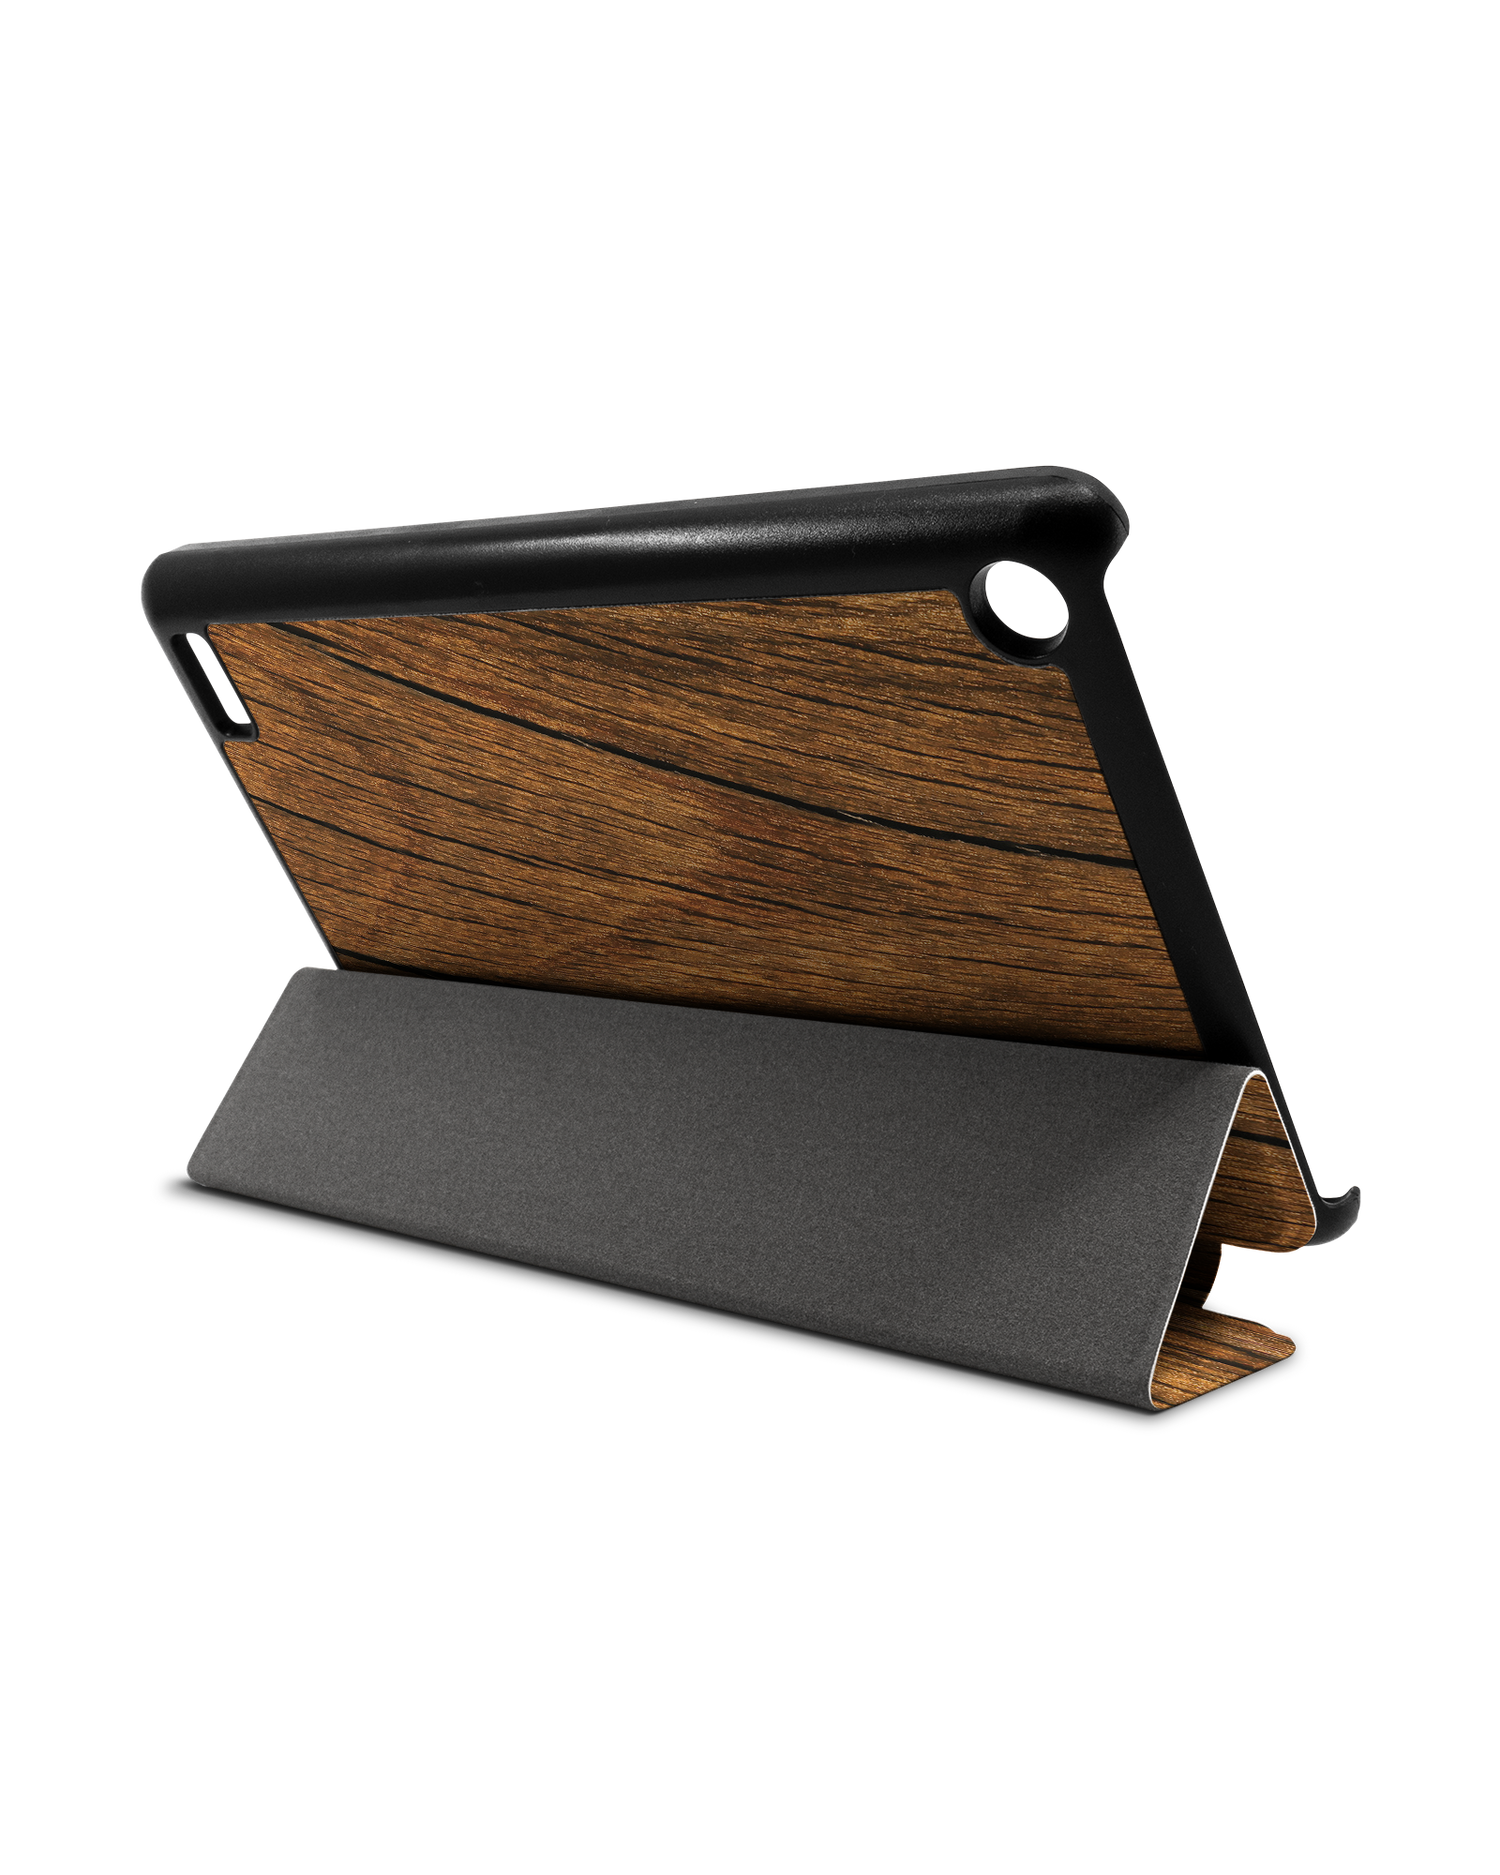 Wood Tablet Smart Case für Amazon Fire 7: Aufgestellt im Querformat